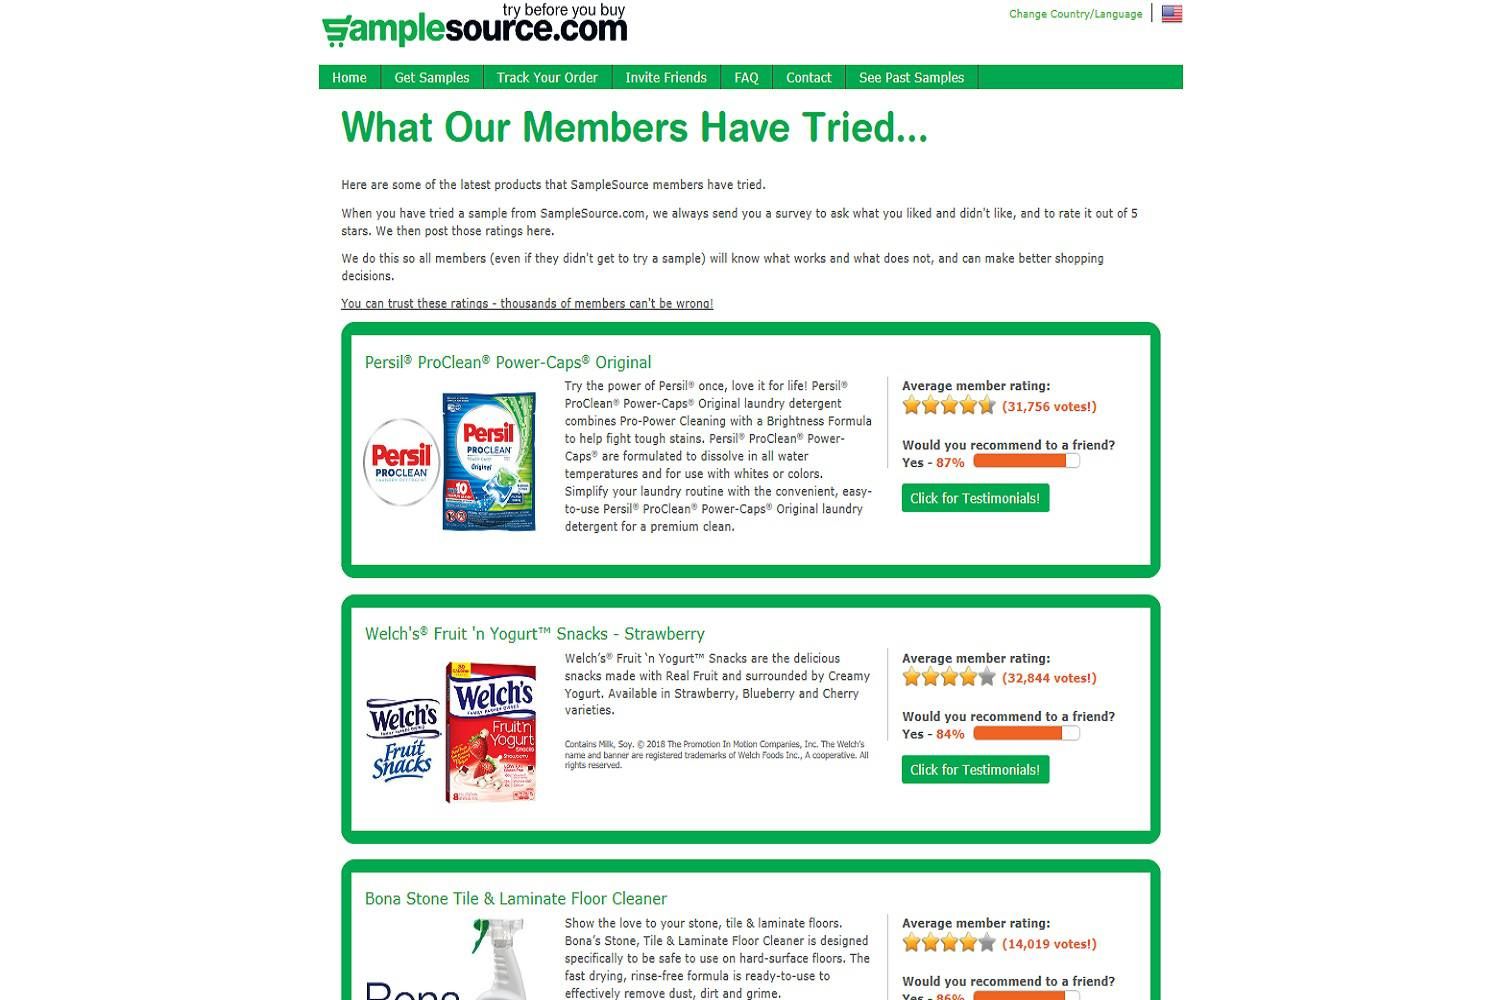 Скриншот веб-сайта SampleSource.com, на котором показаны последние бесплатные образцы, в том числе бесплатные образцы продуктов питания.